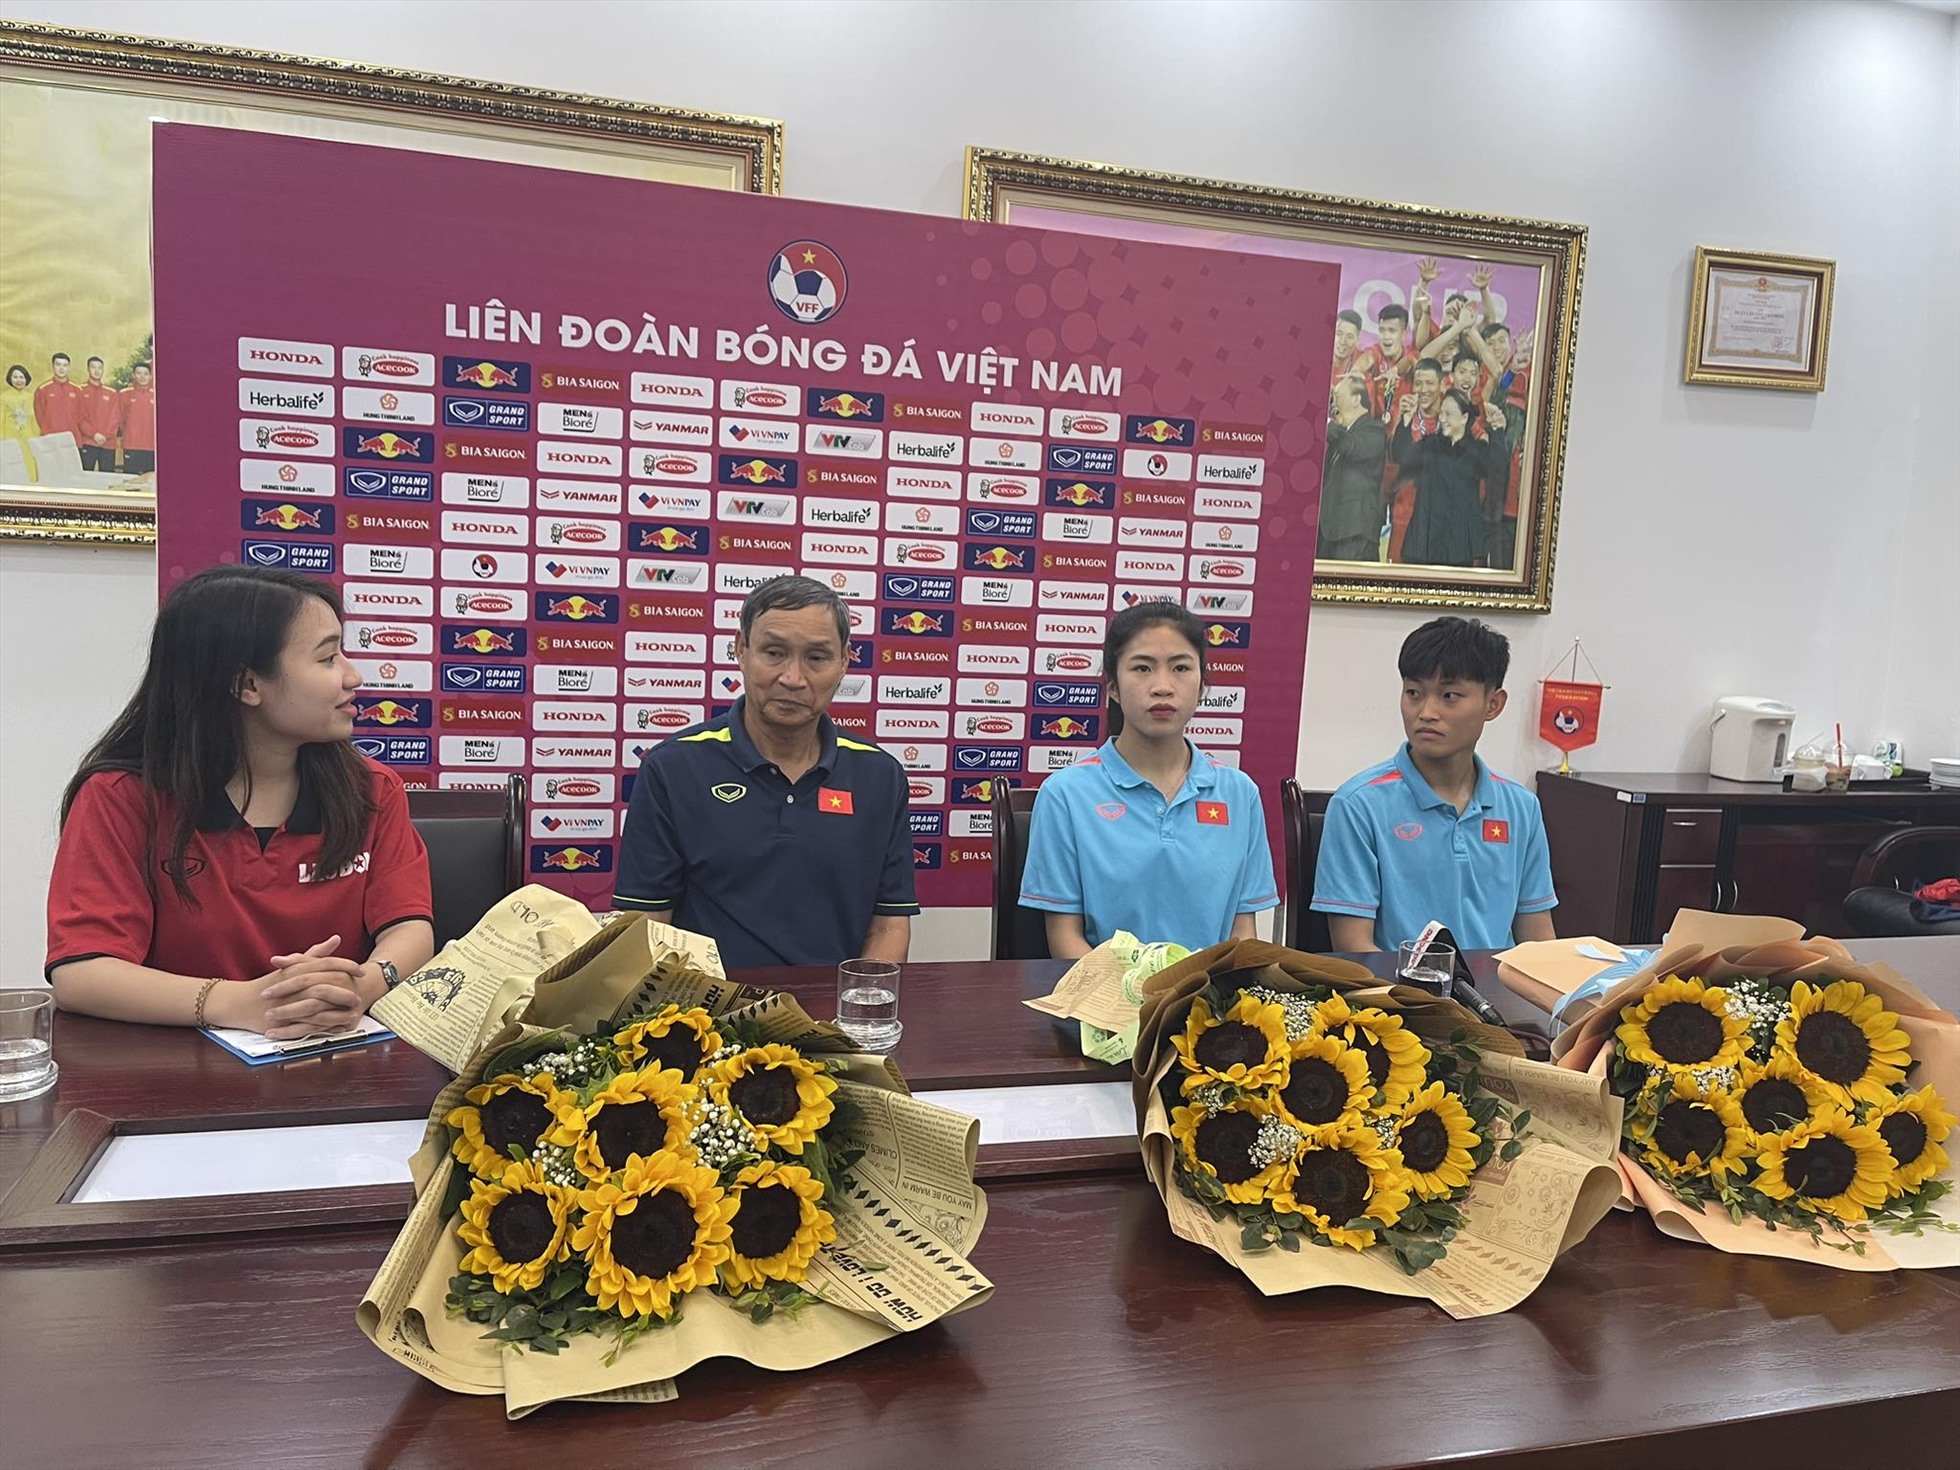 Huấn luyện viên Mai Đức Chung cùng 2 cầu thủ Nguyễn Thanh Nhã, Trần Thị Hải Linh trong buổi giao lưu. Ảnh: Chi Trần